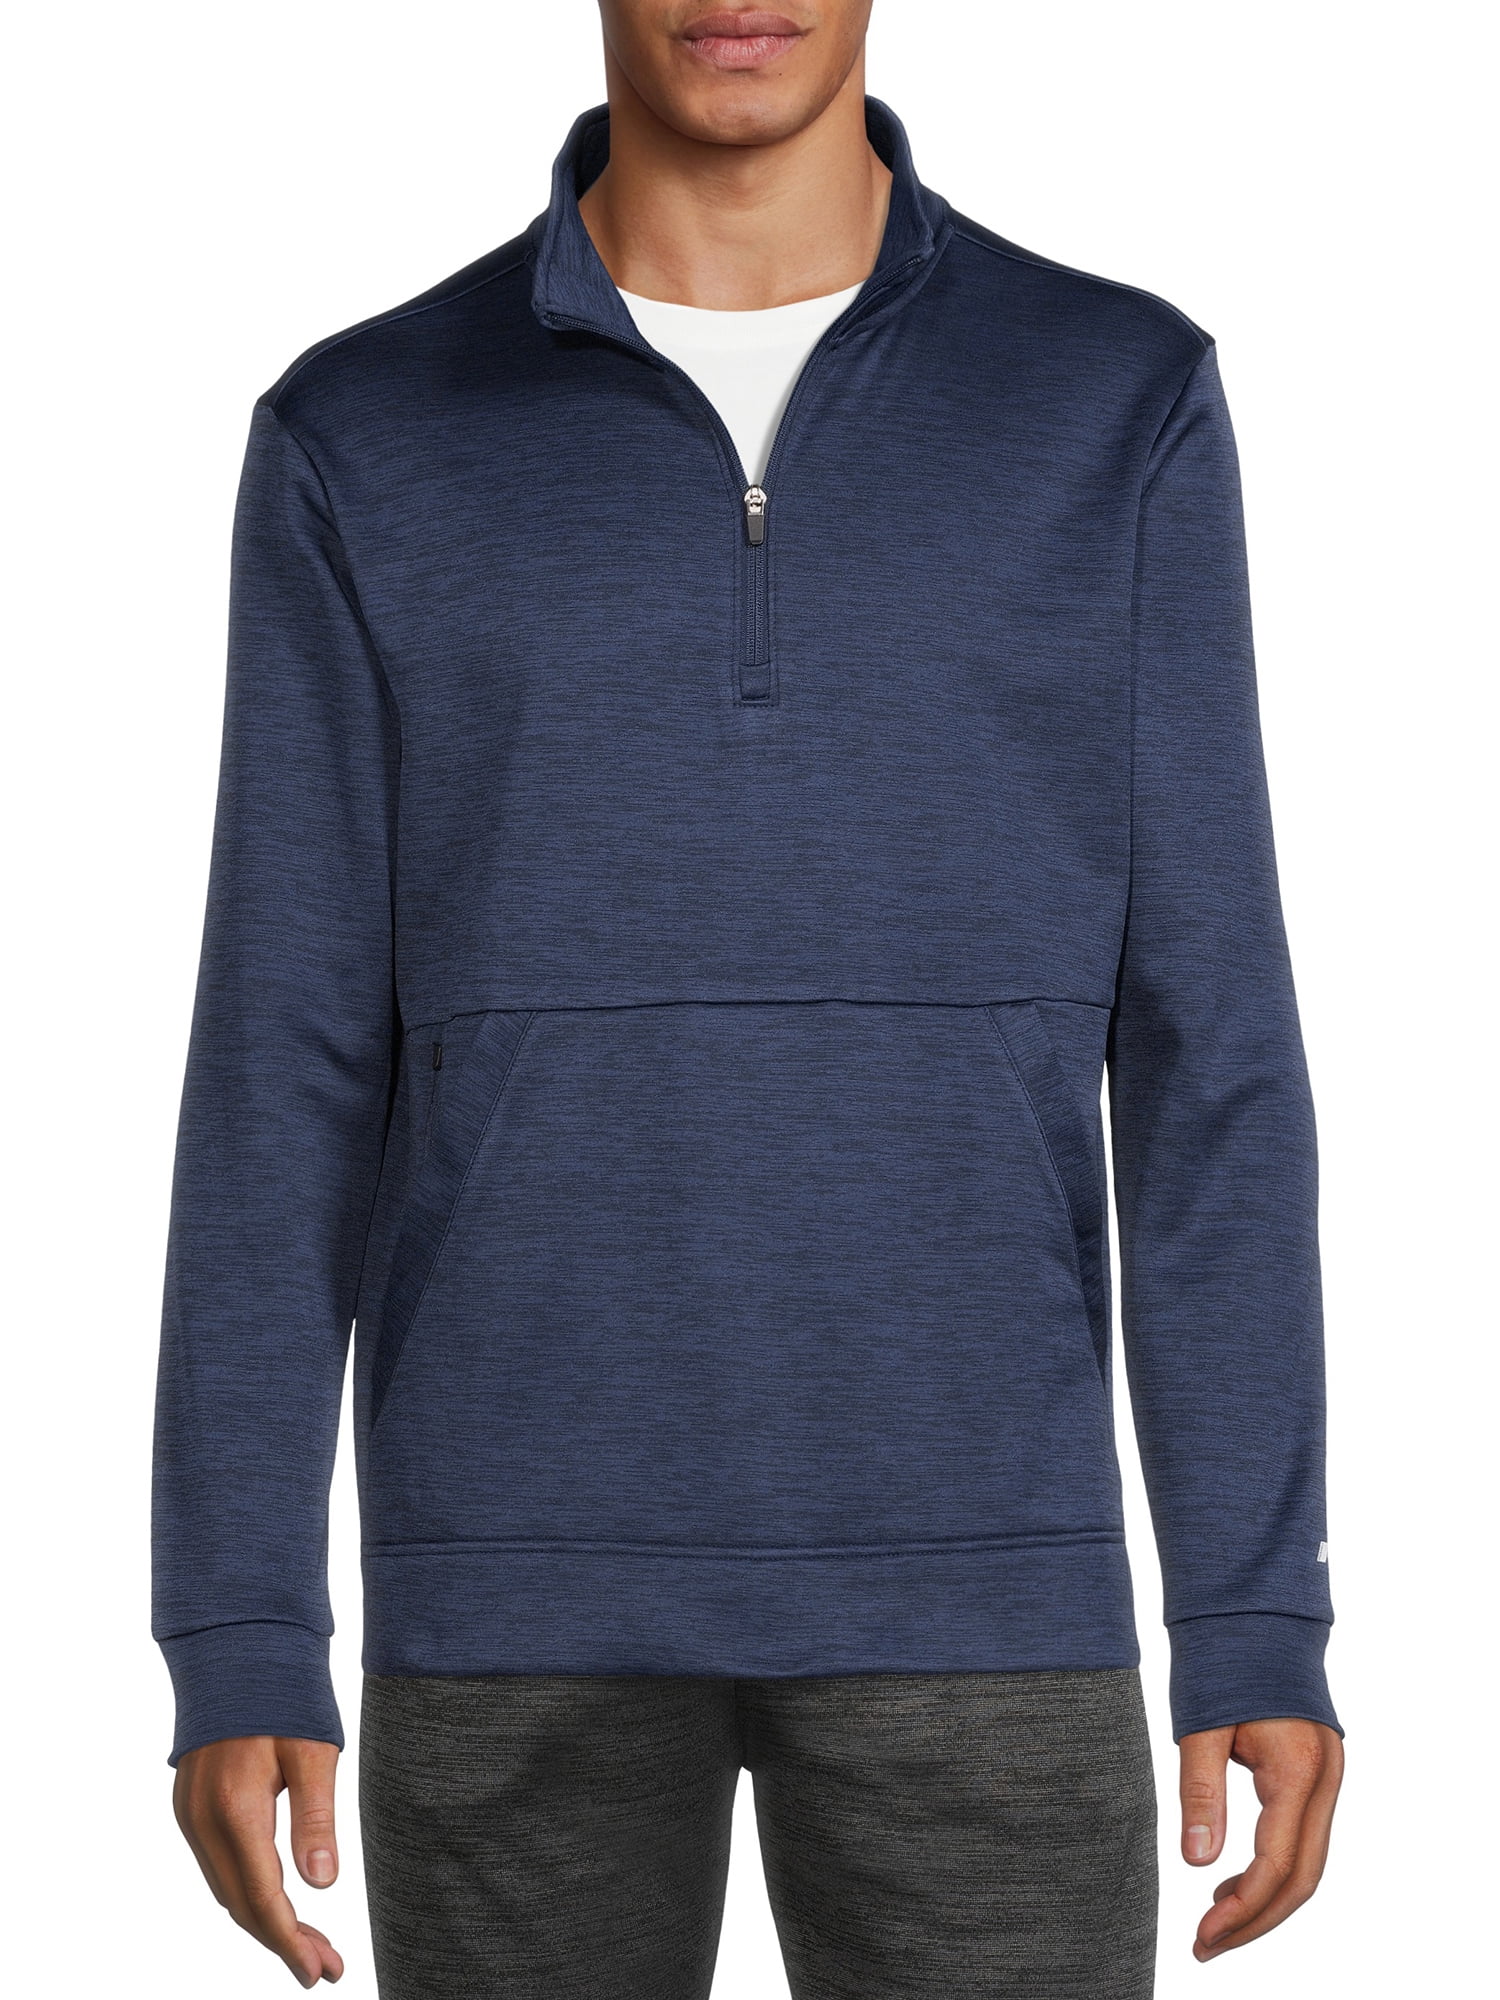 Russell 1/4 Zip Collar Mens Microfleece Pullover Jumper Warm Outdoor Sweatshirt 